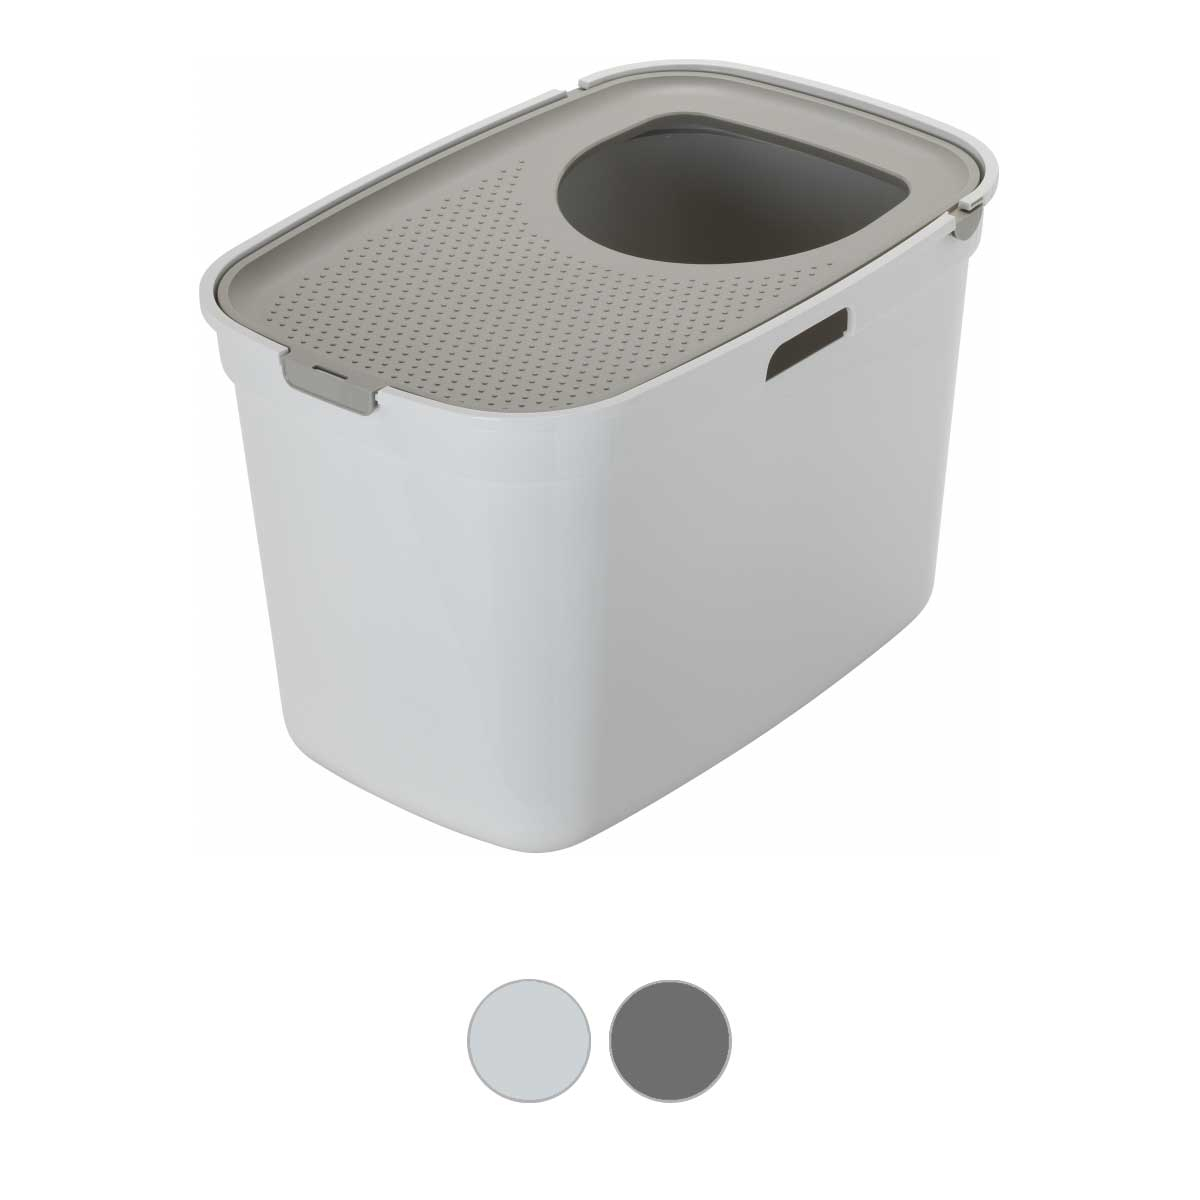 Maison de toilette Top Cat recyclé - 2 coloris disponibles